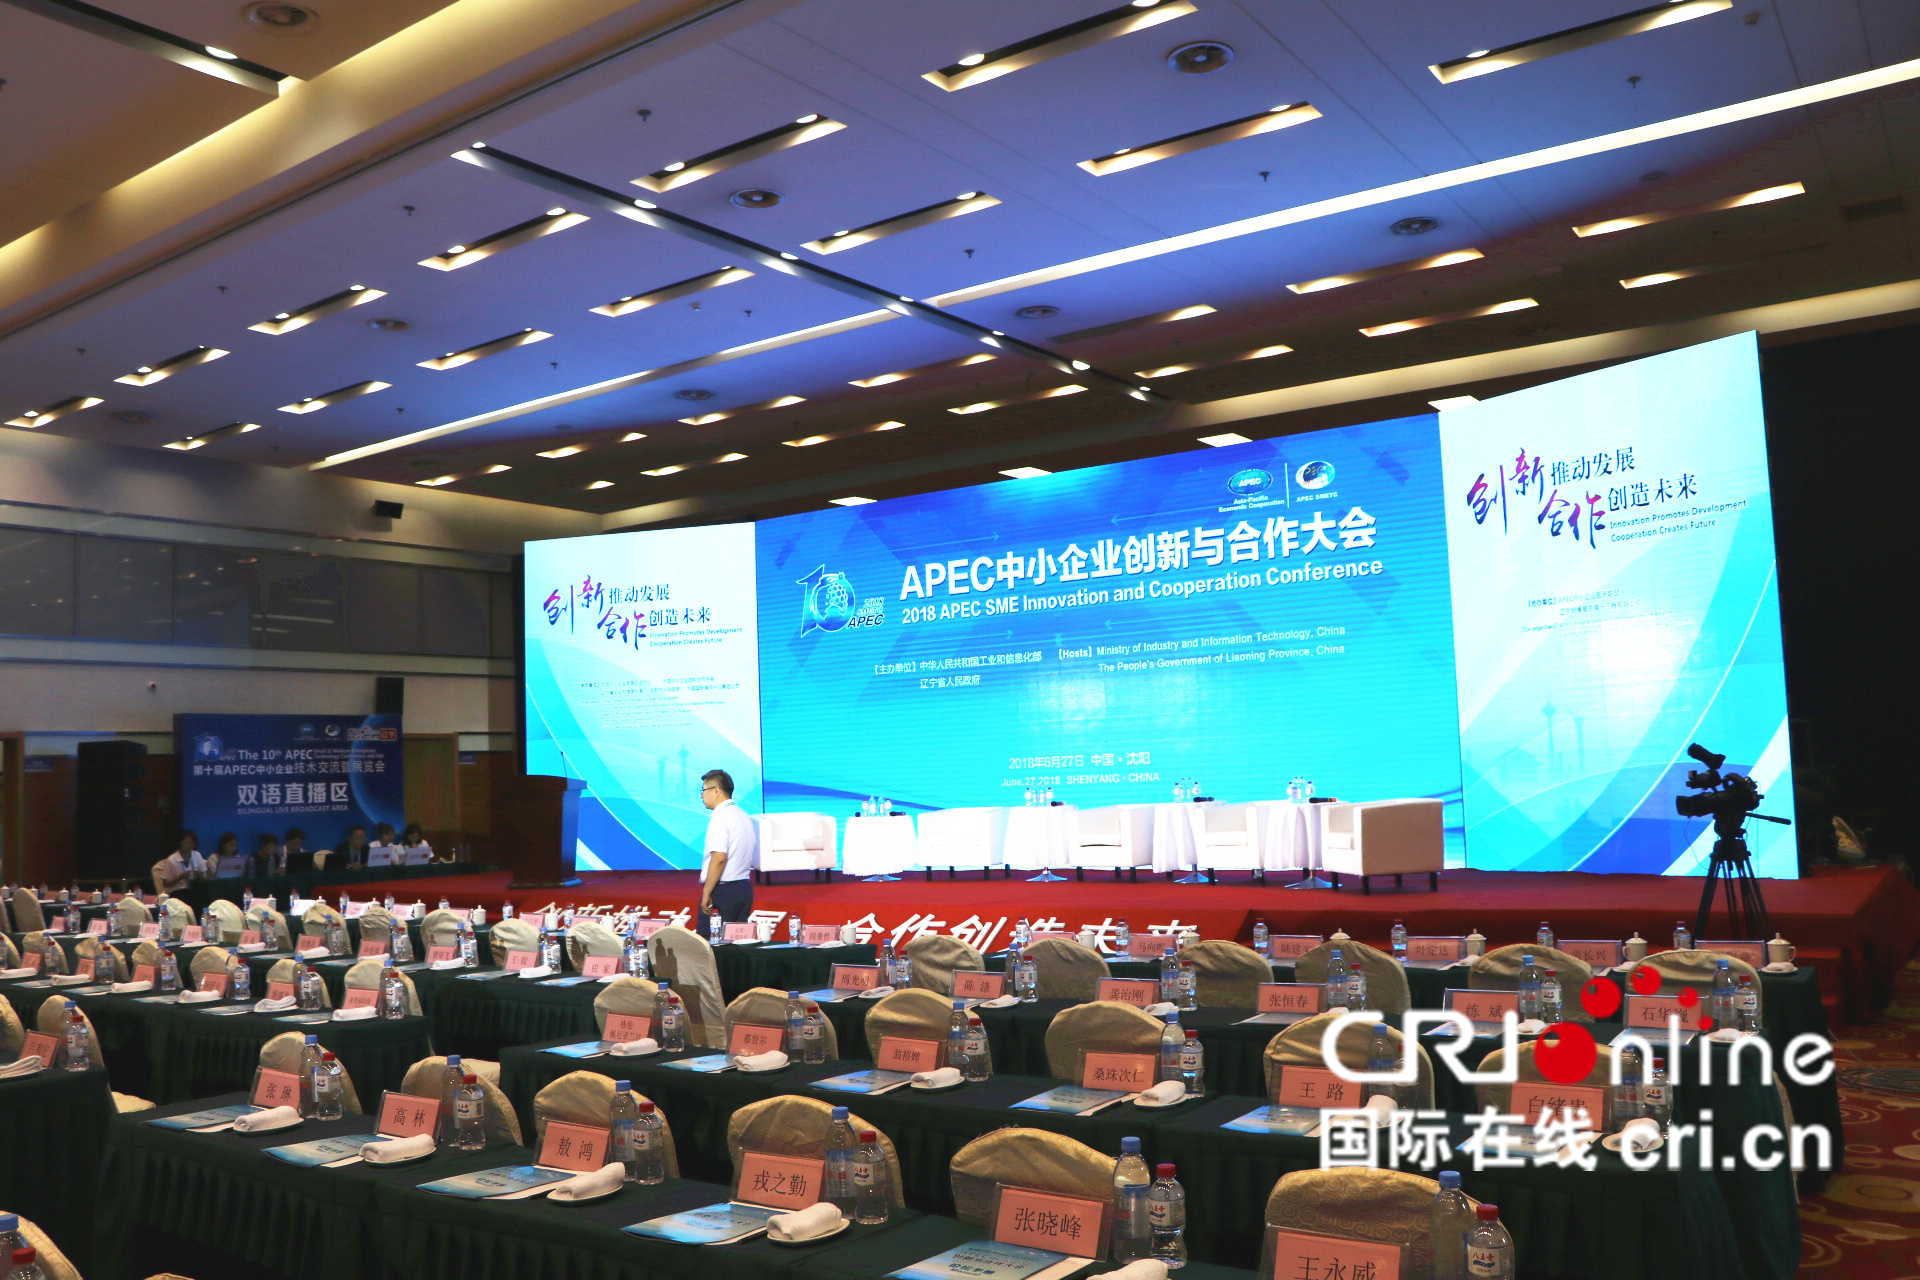 第十屆APEC技展會主論壇即將開始，讓我們期待各位嘉賓的精彩論述。_fororder_第十屆APEC技展會主論壇即將開始，讓我們期待各位嘉賓的精彩論述。